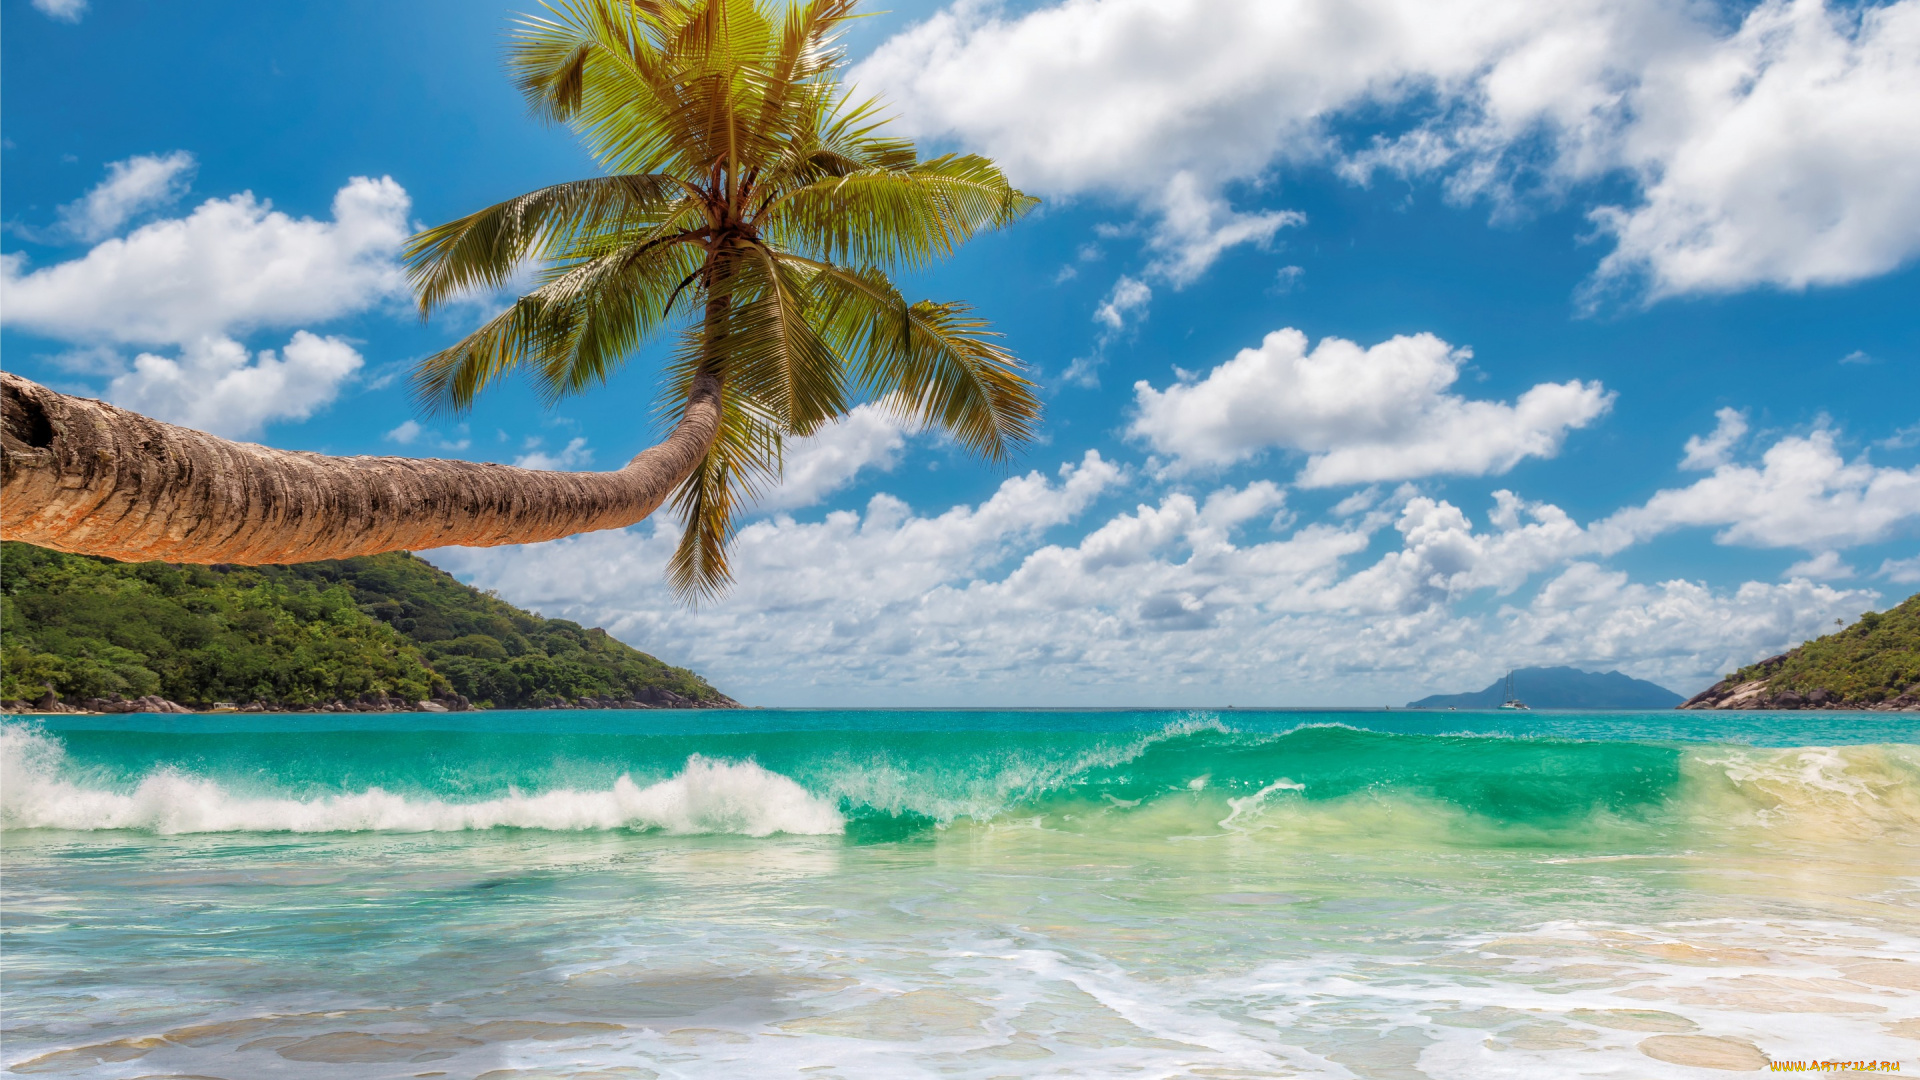 природа, тропики, beach, sand, summer, tropical, island, берег, пляж, palms, sea, солнце, песок, море, пальмы, paradise